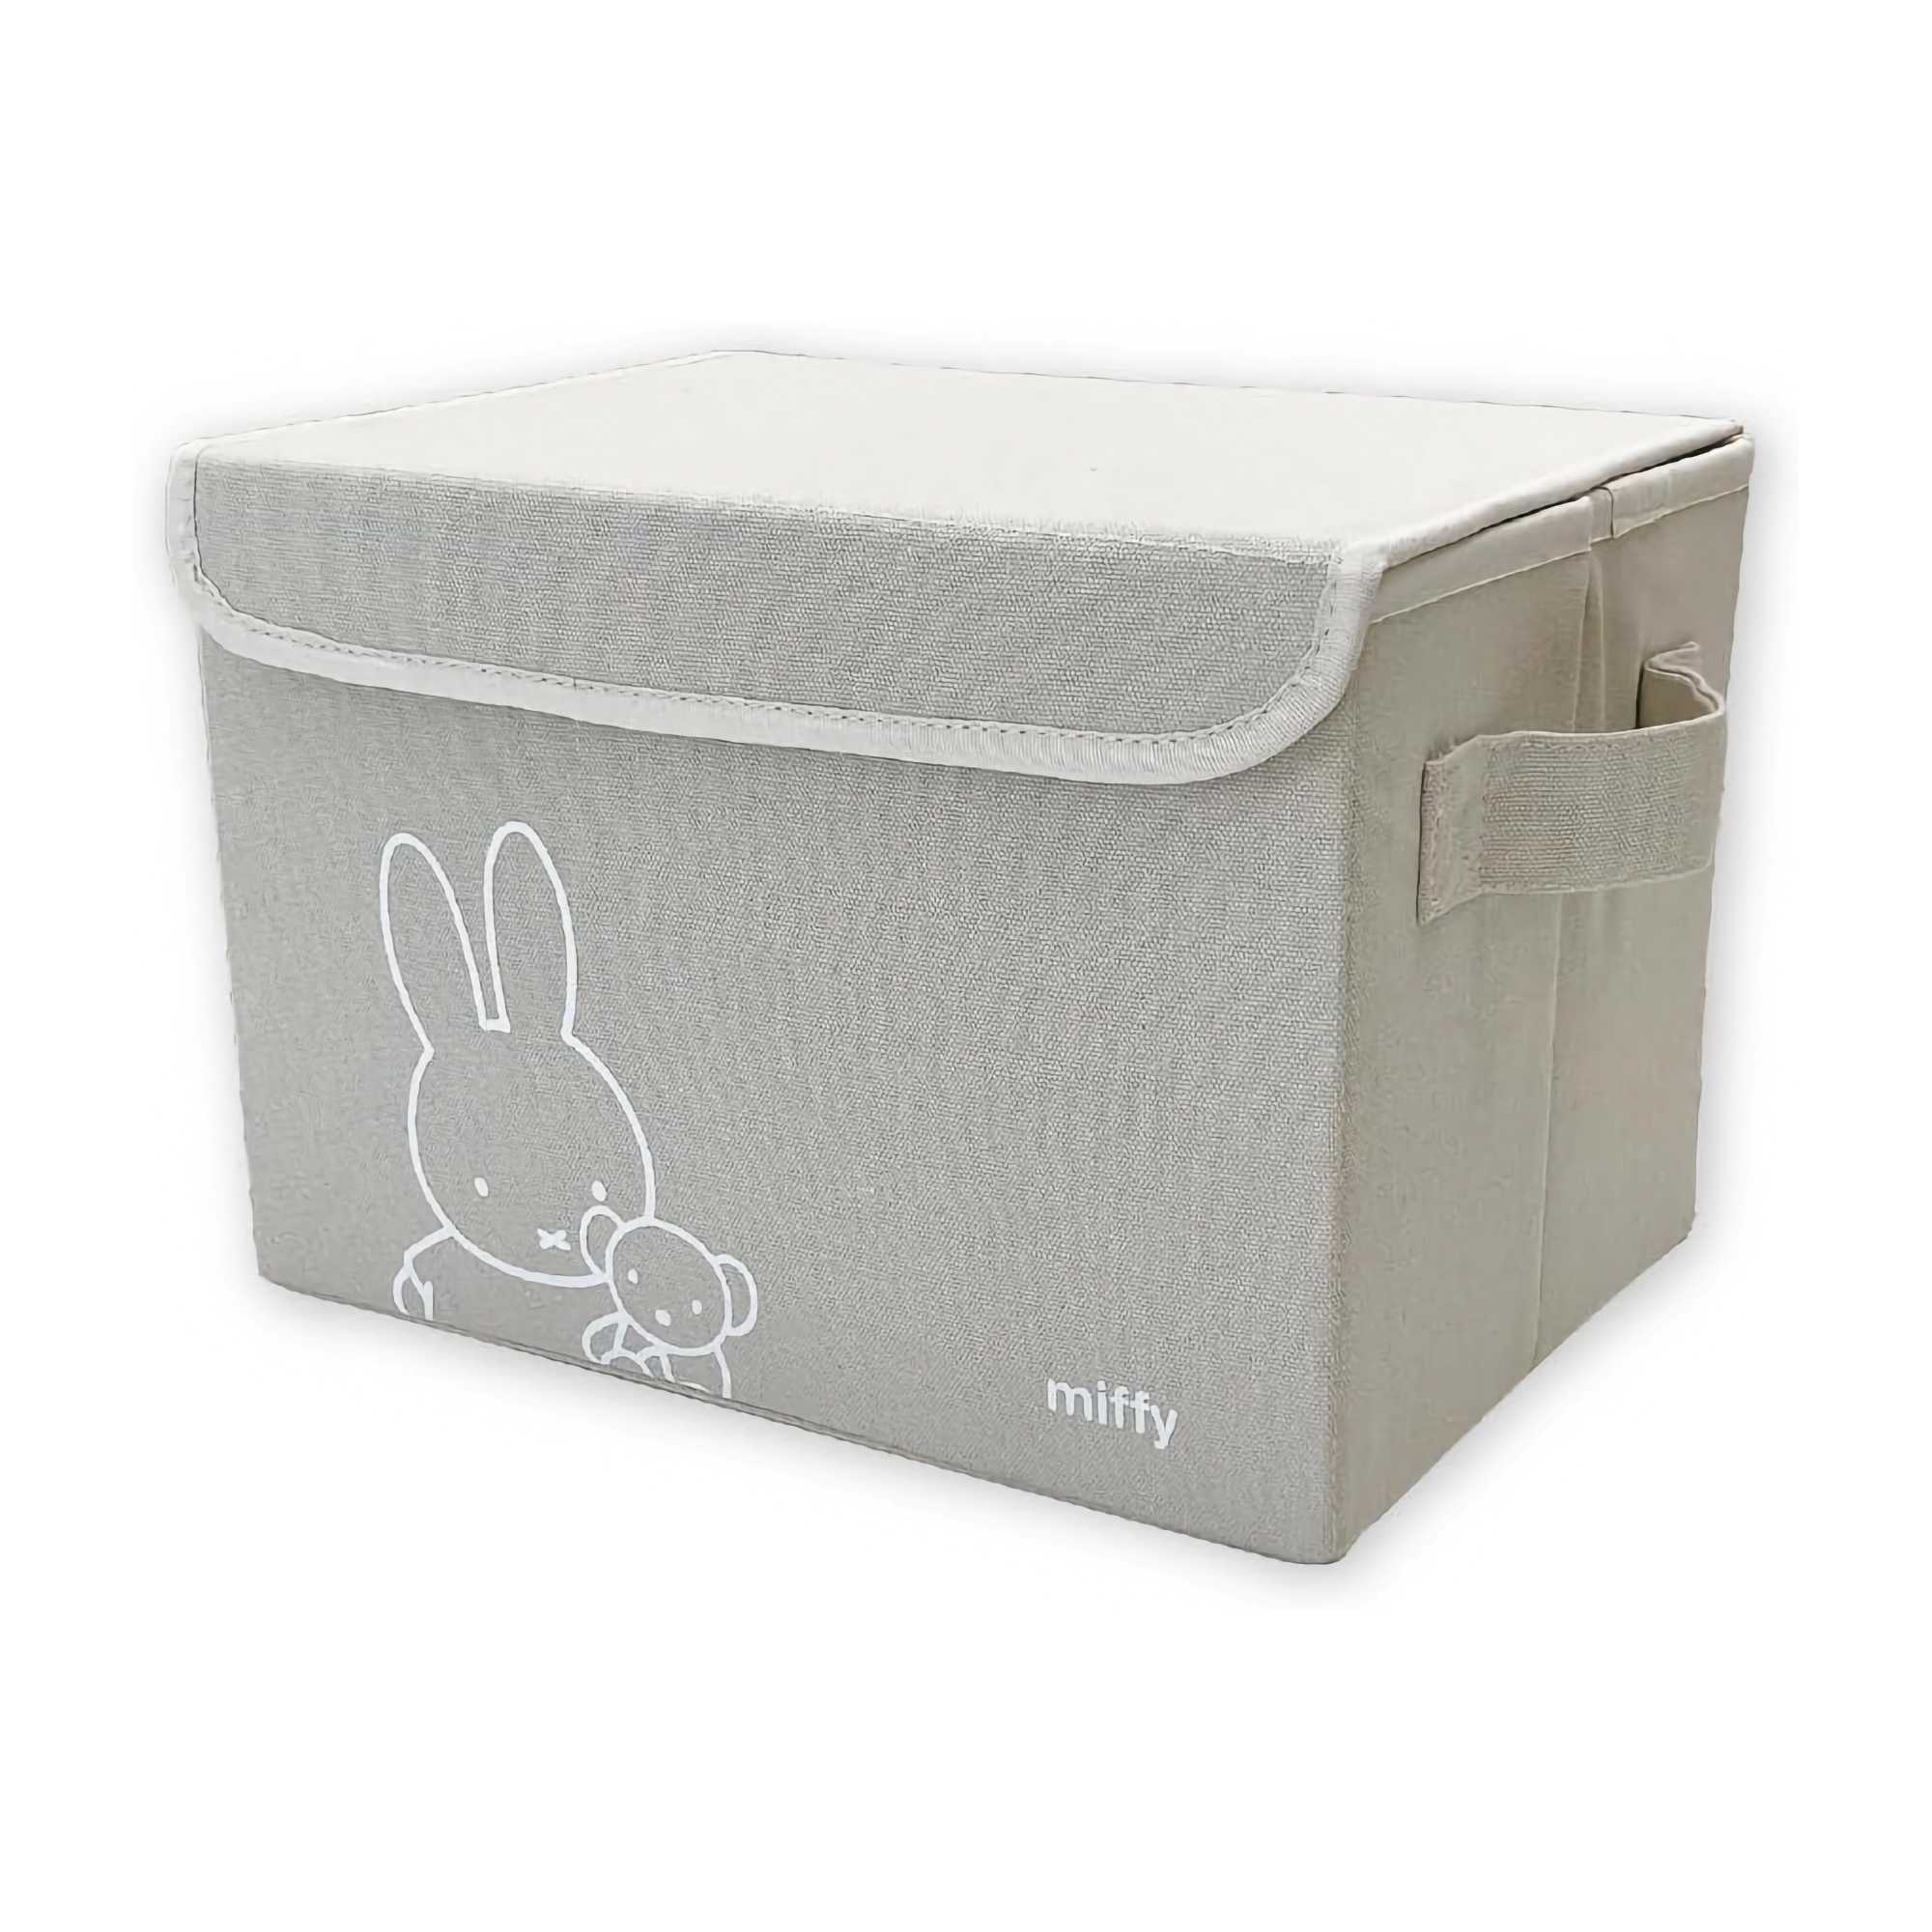 Miffy Folding Storage Box with Lid, Grey